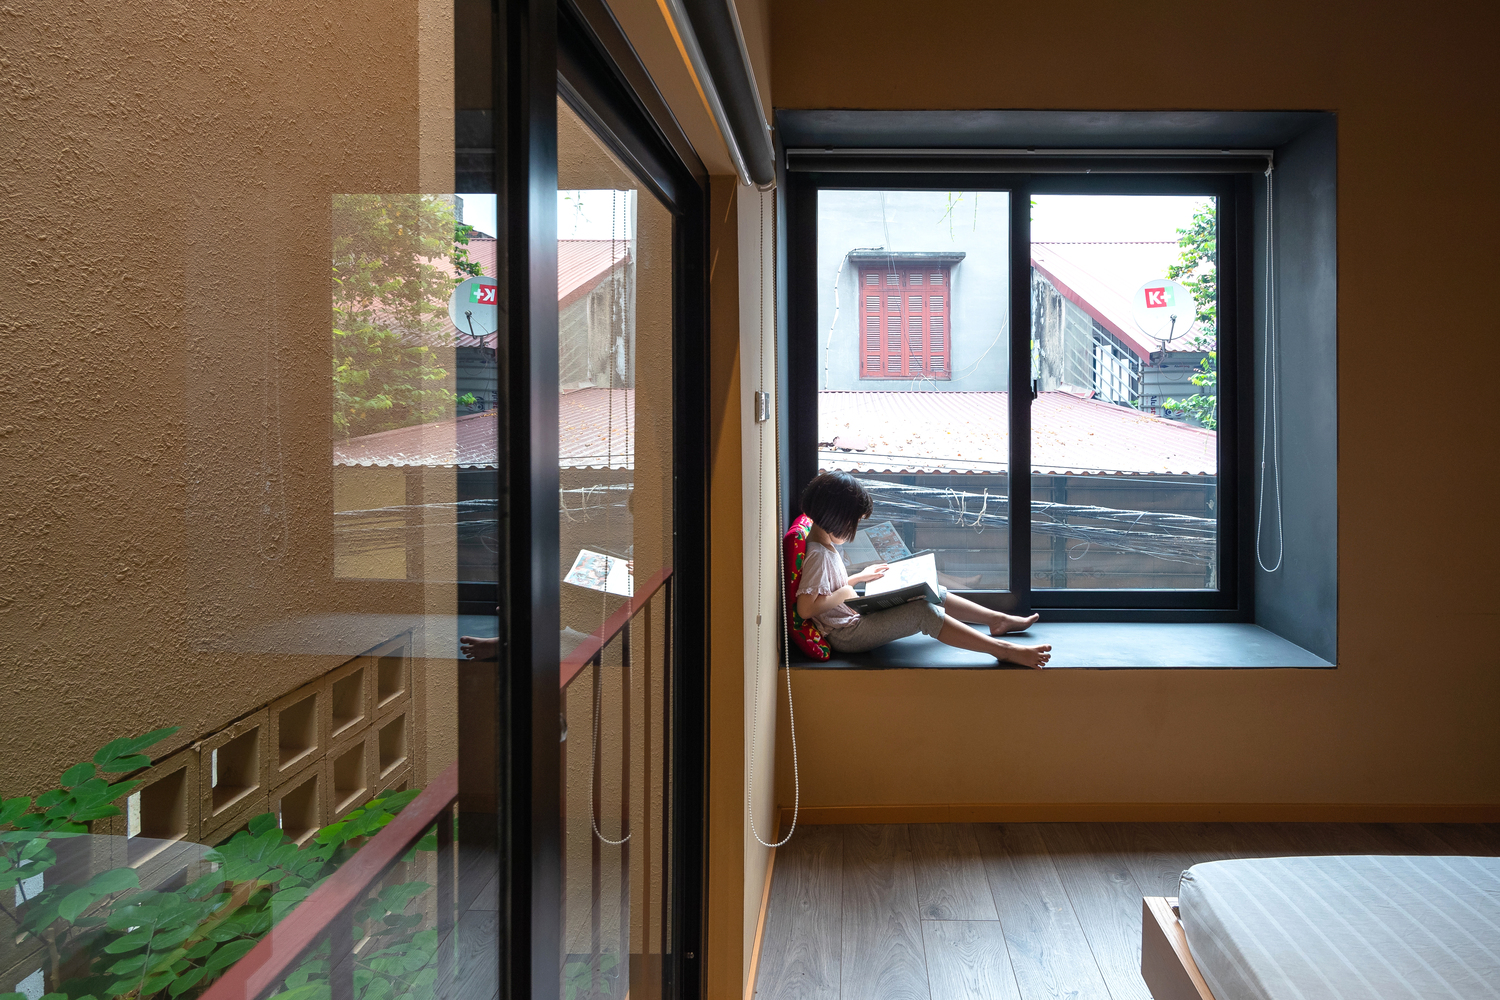 Bệ cửa sổ với khung cửa kính tạo thành một góc ngồi thư giãn để đọc sách, nhâm nhi tách trà, cà phê,... ngắm nhìn những tia nắng, hạt mưa long lanh rơi ngoài cửa sổ.